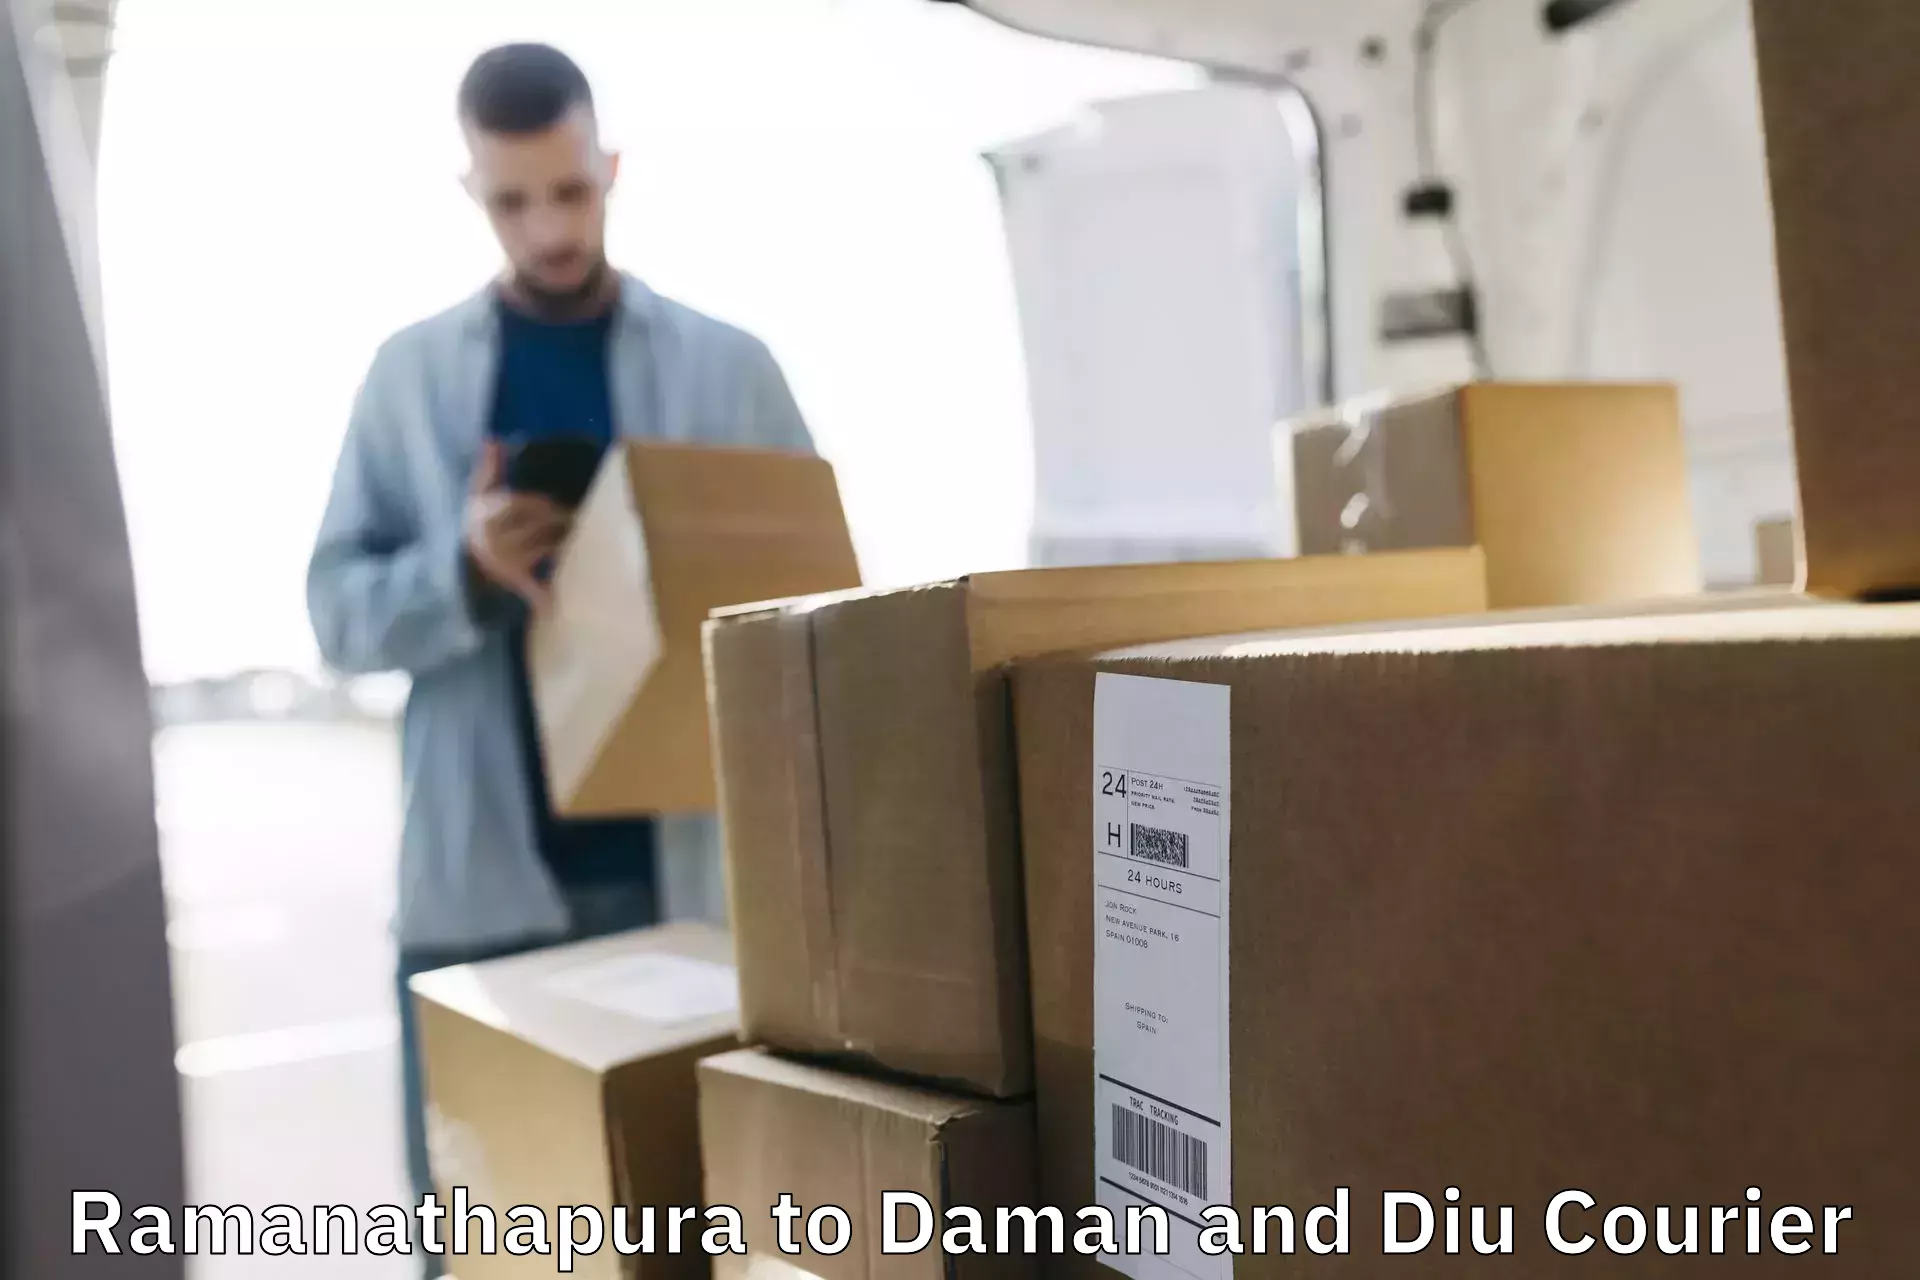 Budget-friendly shipping Ramanathapura to Daman and Diu